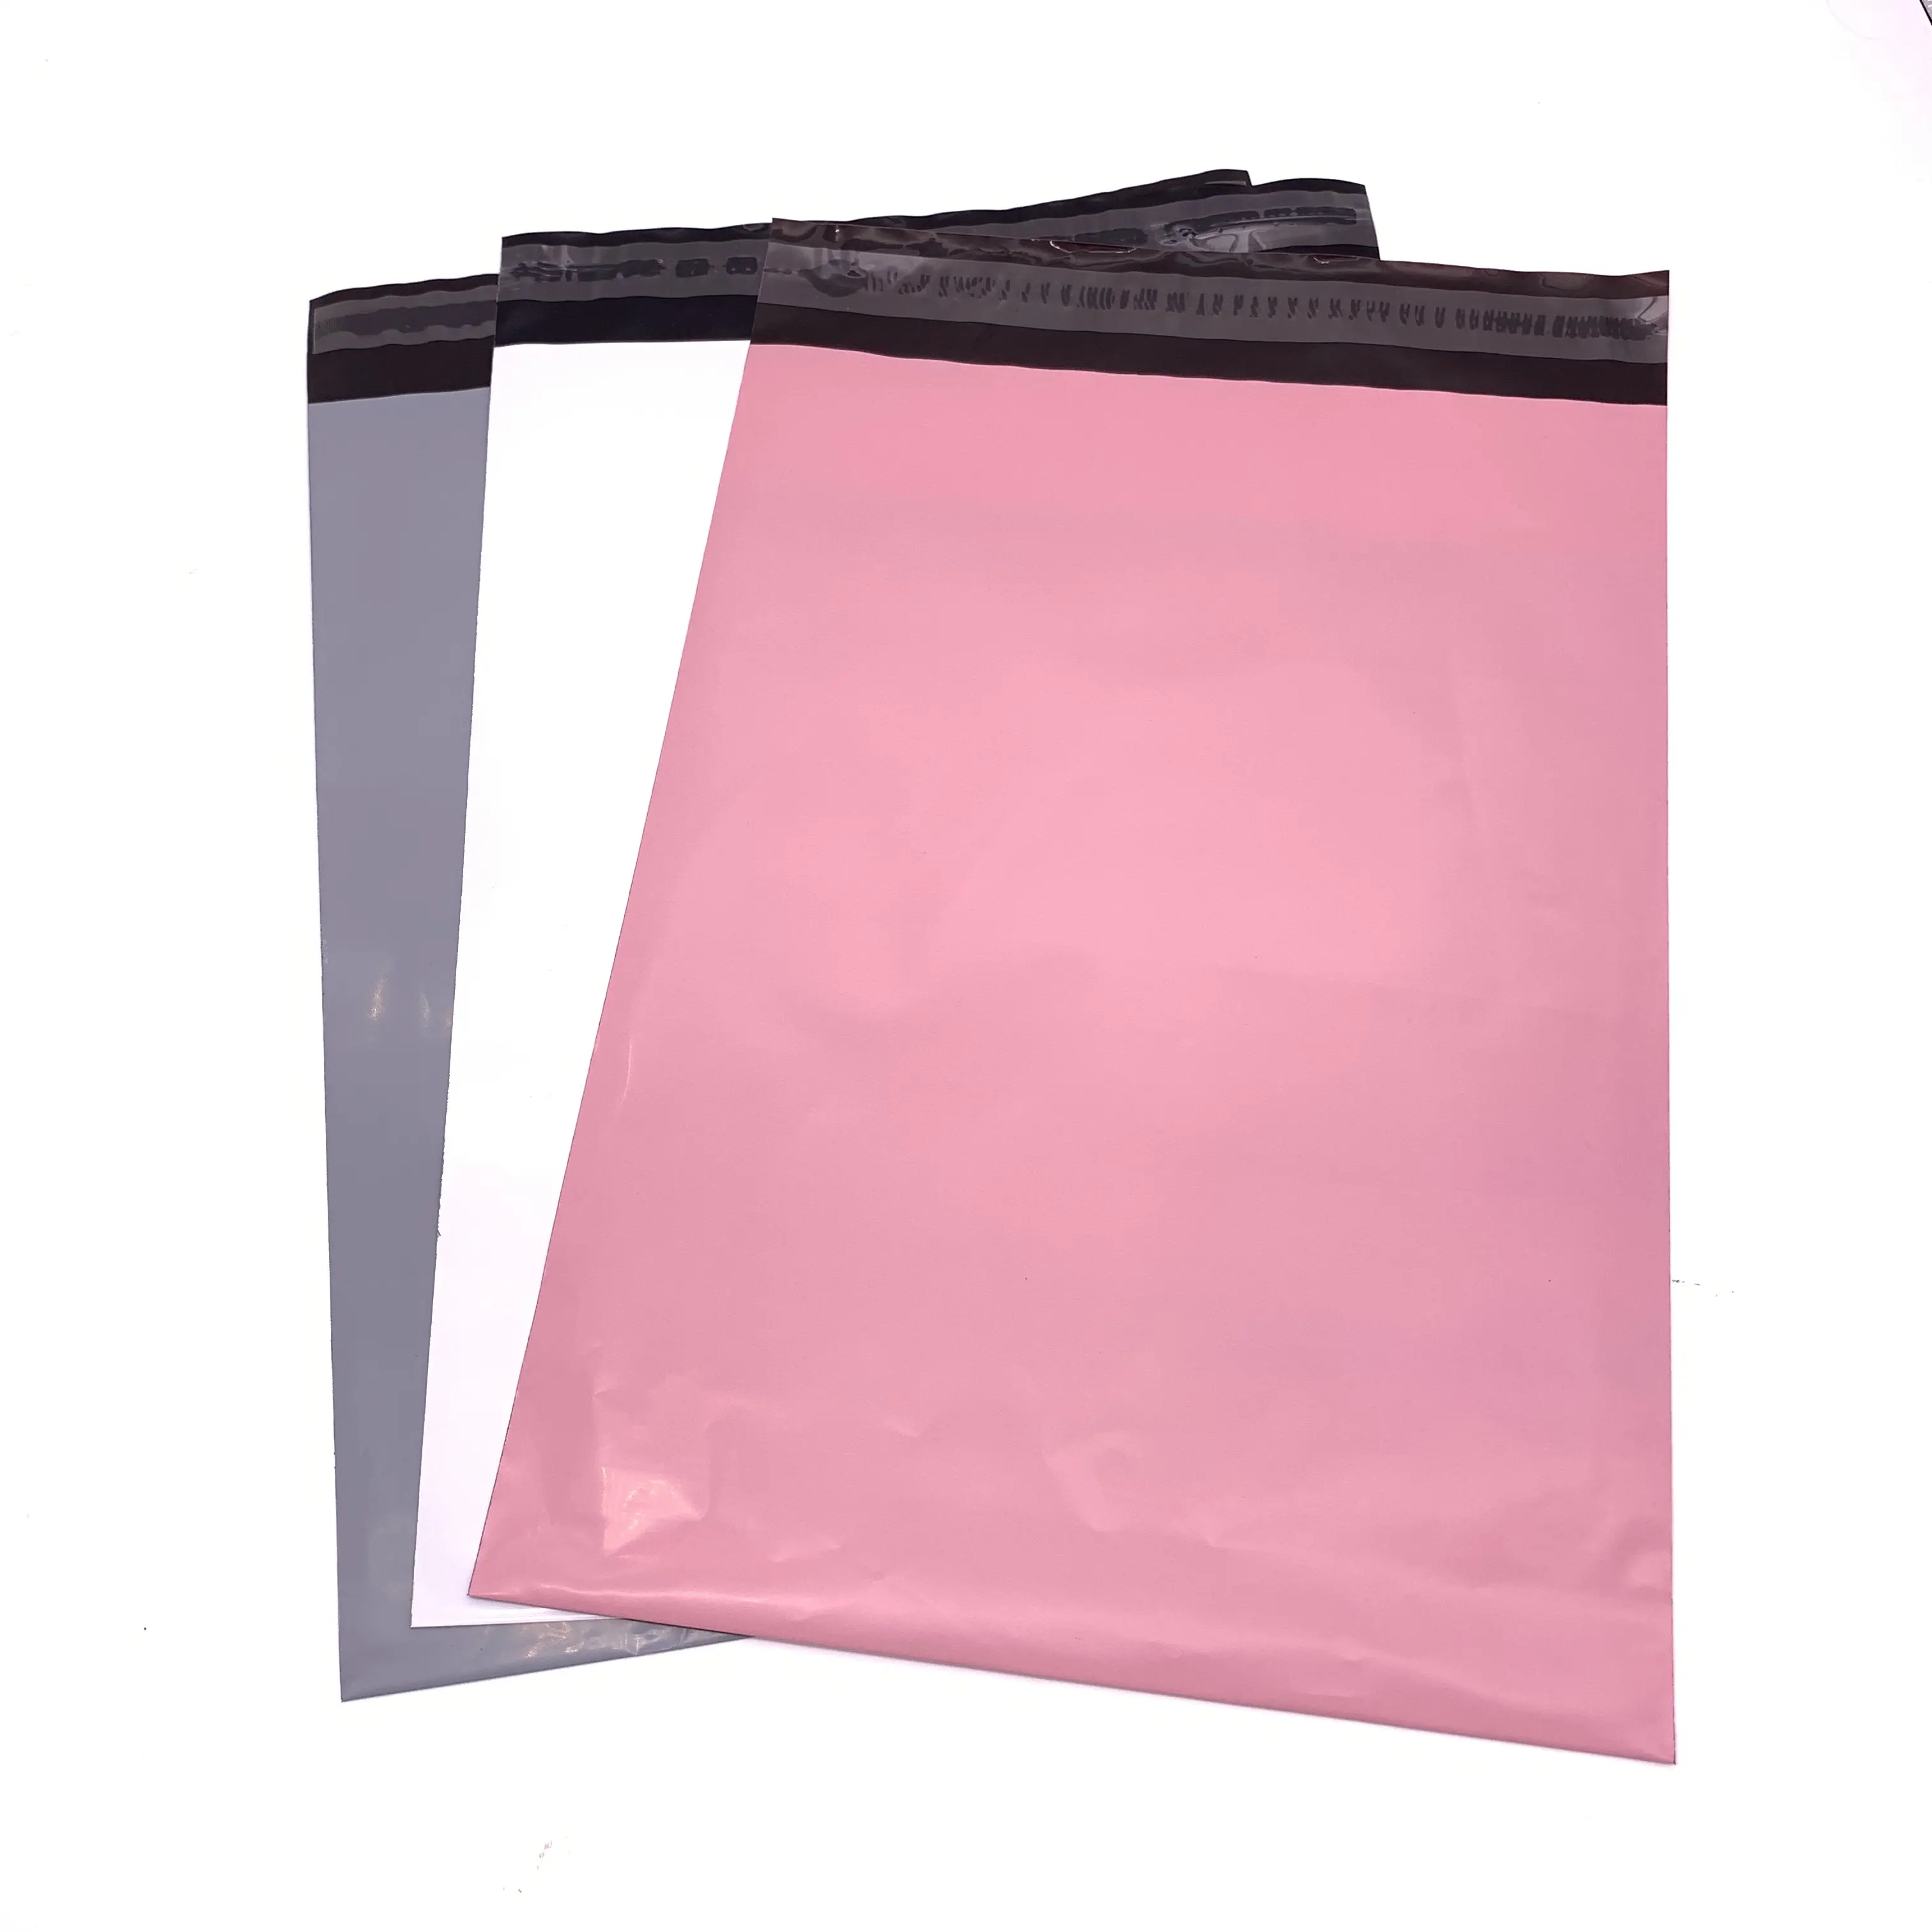 DHL конверты, сырье, Индивидуальные Пластиковые курьерские конверты 300 г/м2, серая доска